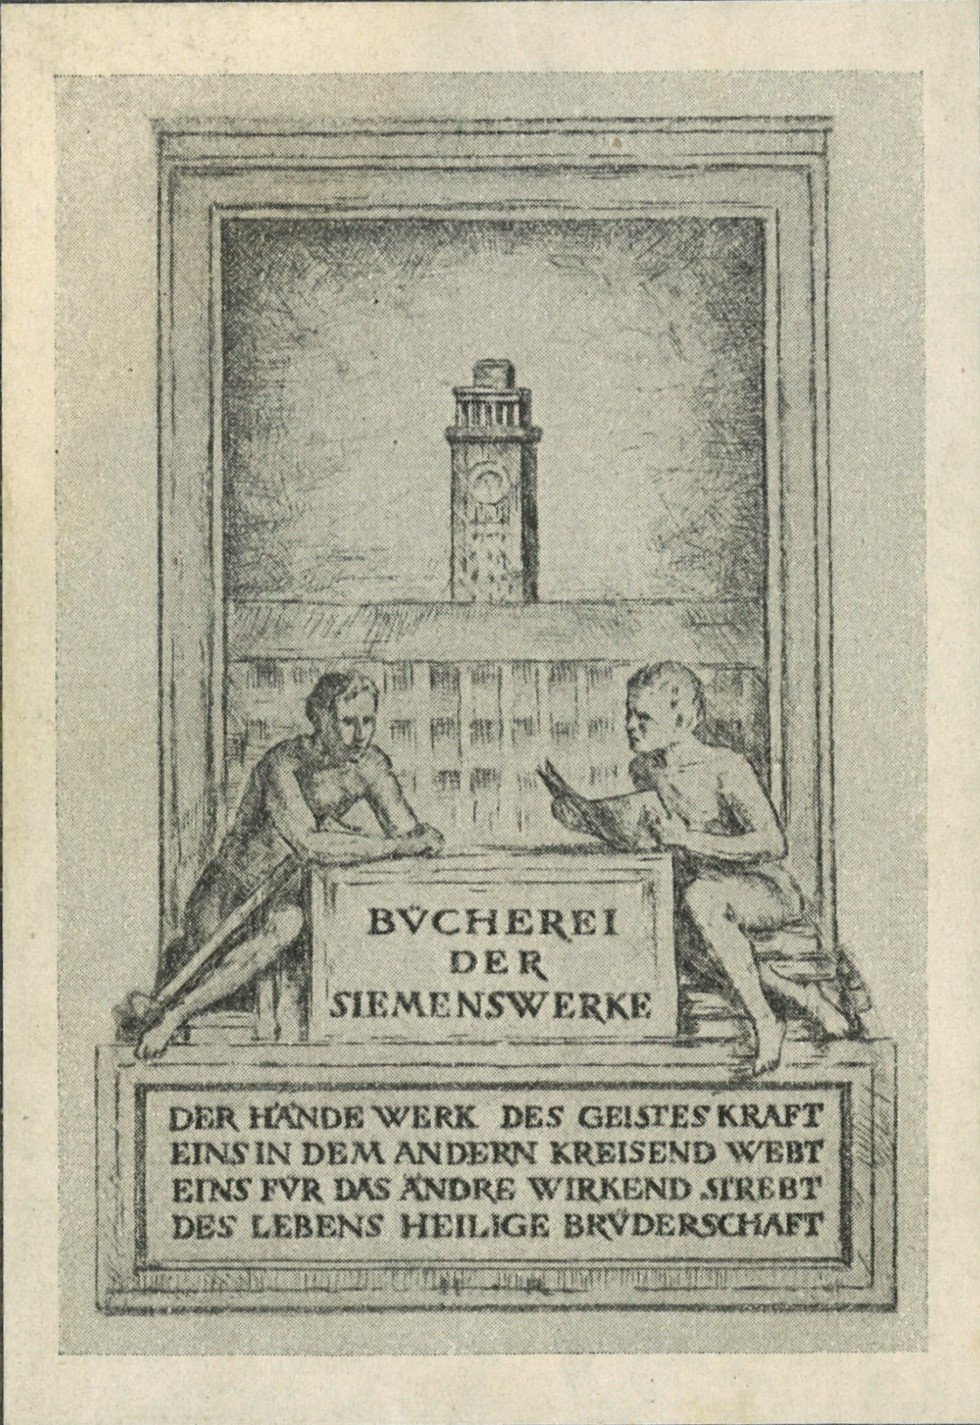 Exlibris der Bücherei der Siemenswerke (Landesgeschichtliche Vereinigung für die Mark Brandenburg e.V. CC BY)